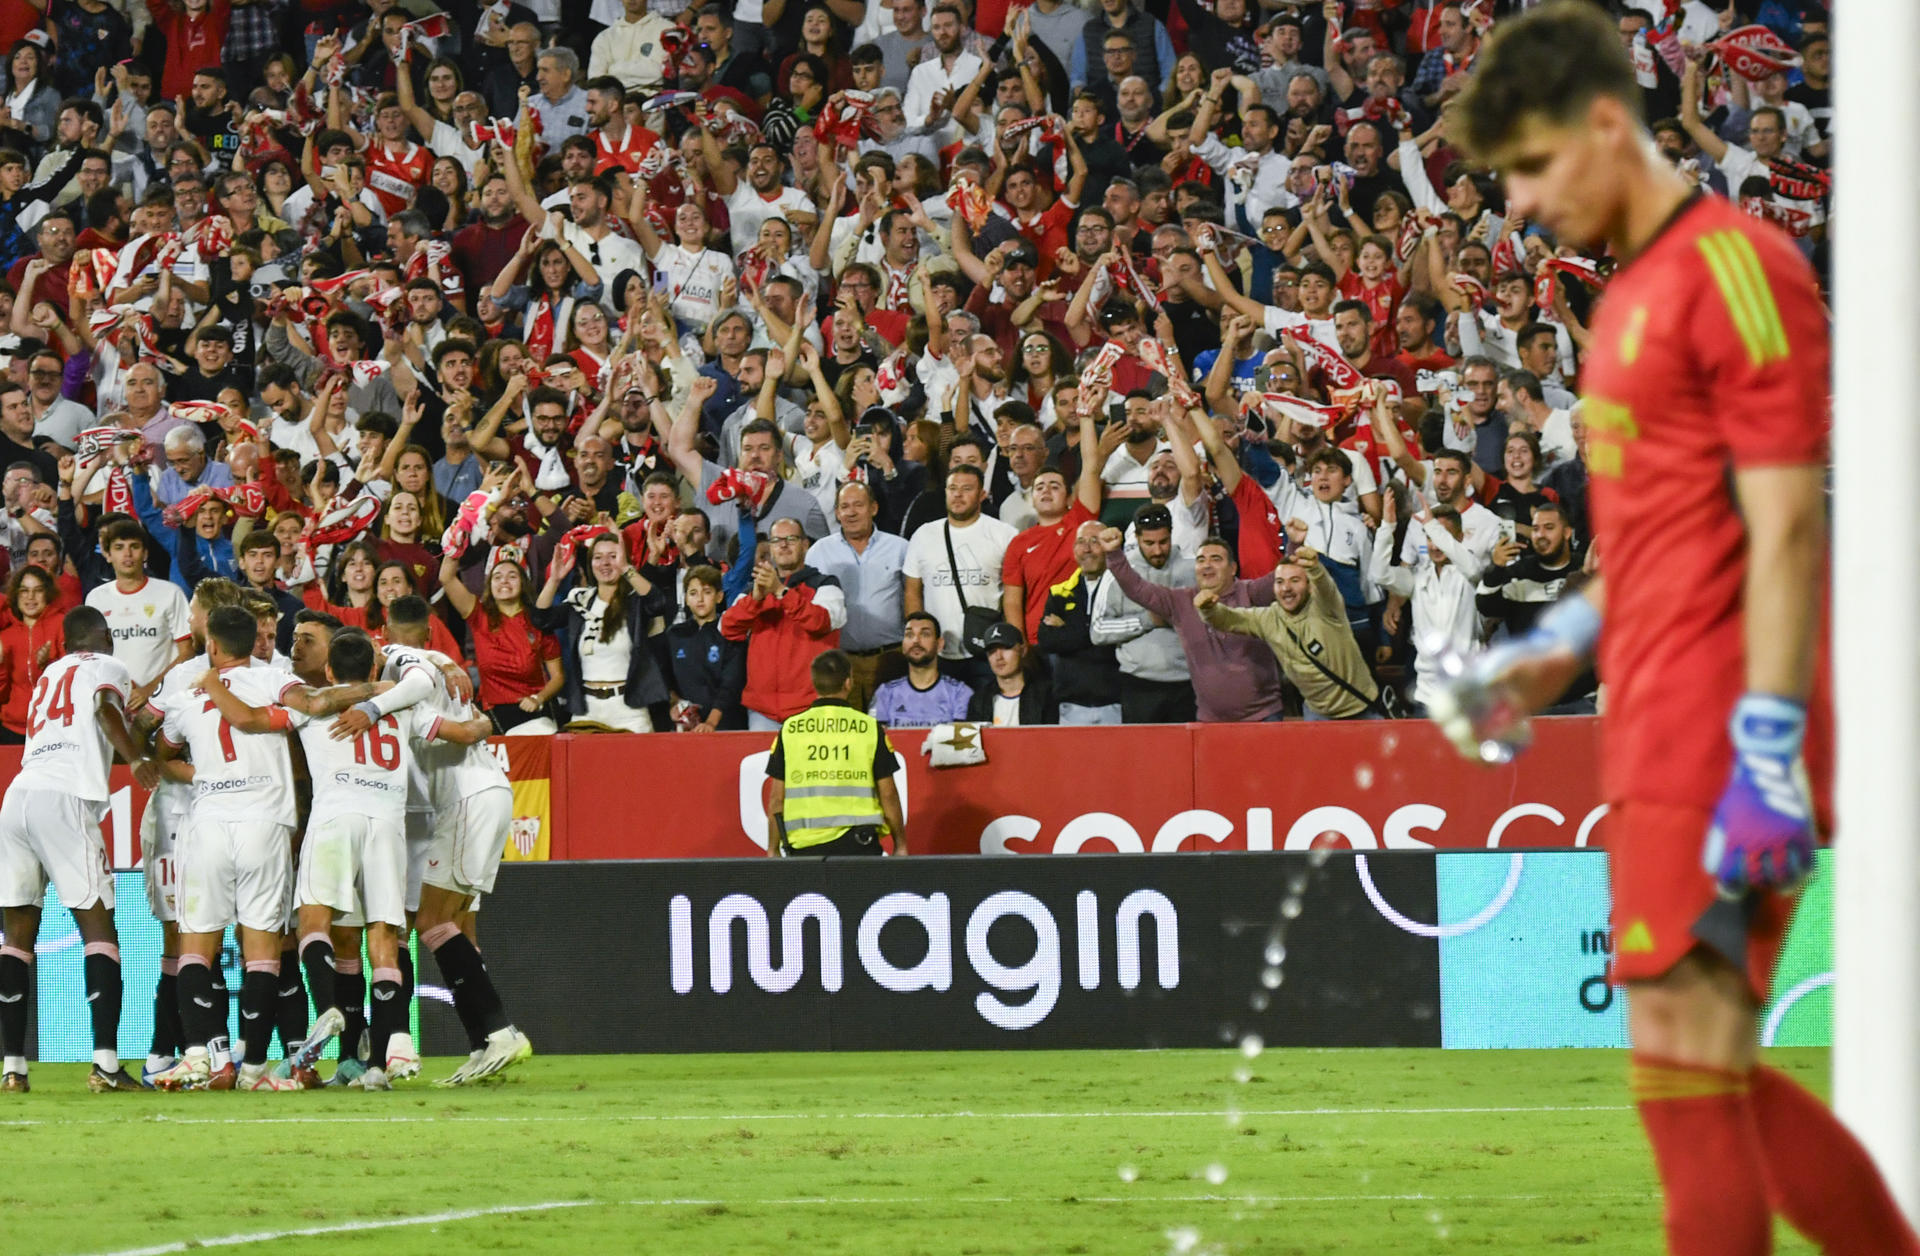 Sevilla expulsó del estadio a un aficionado por comportamiento racista